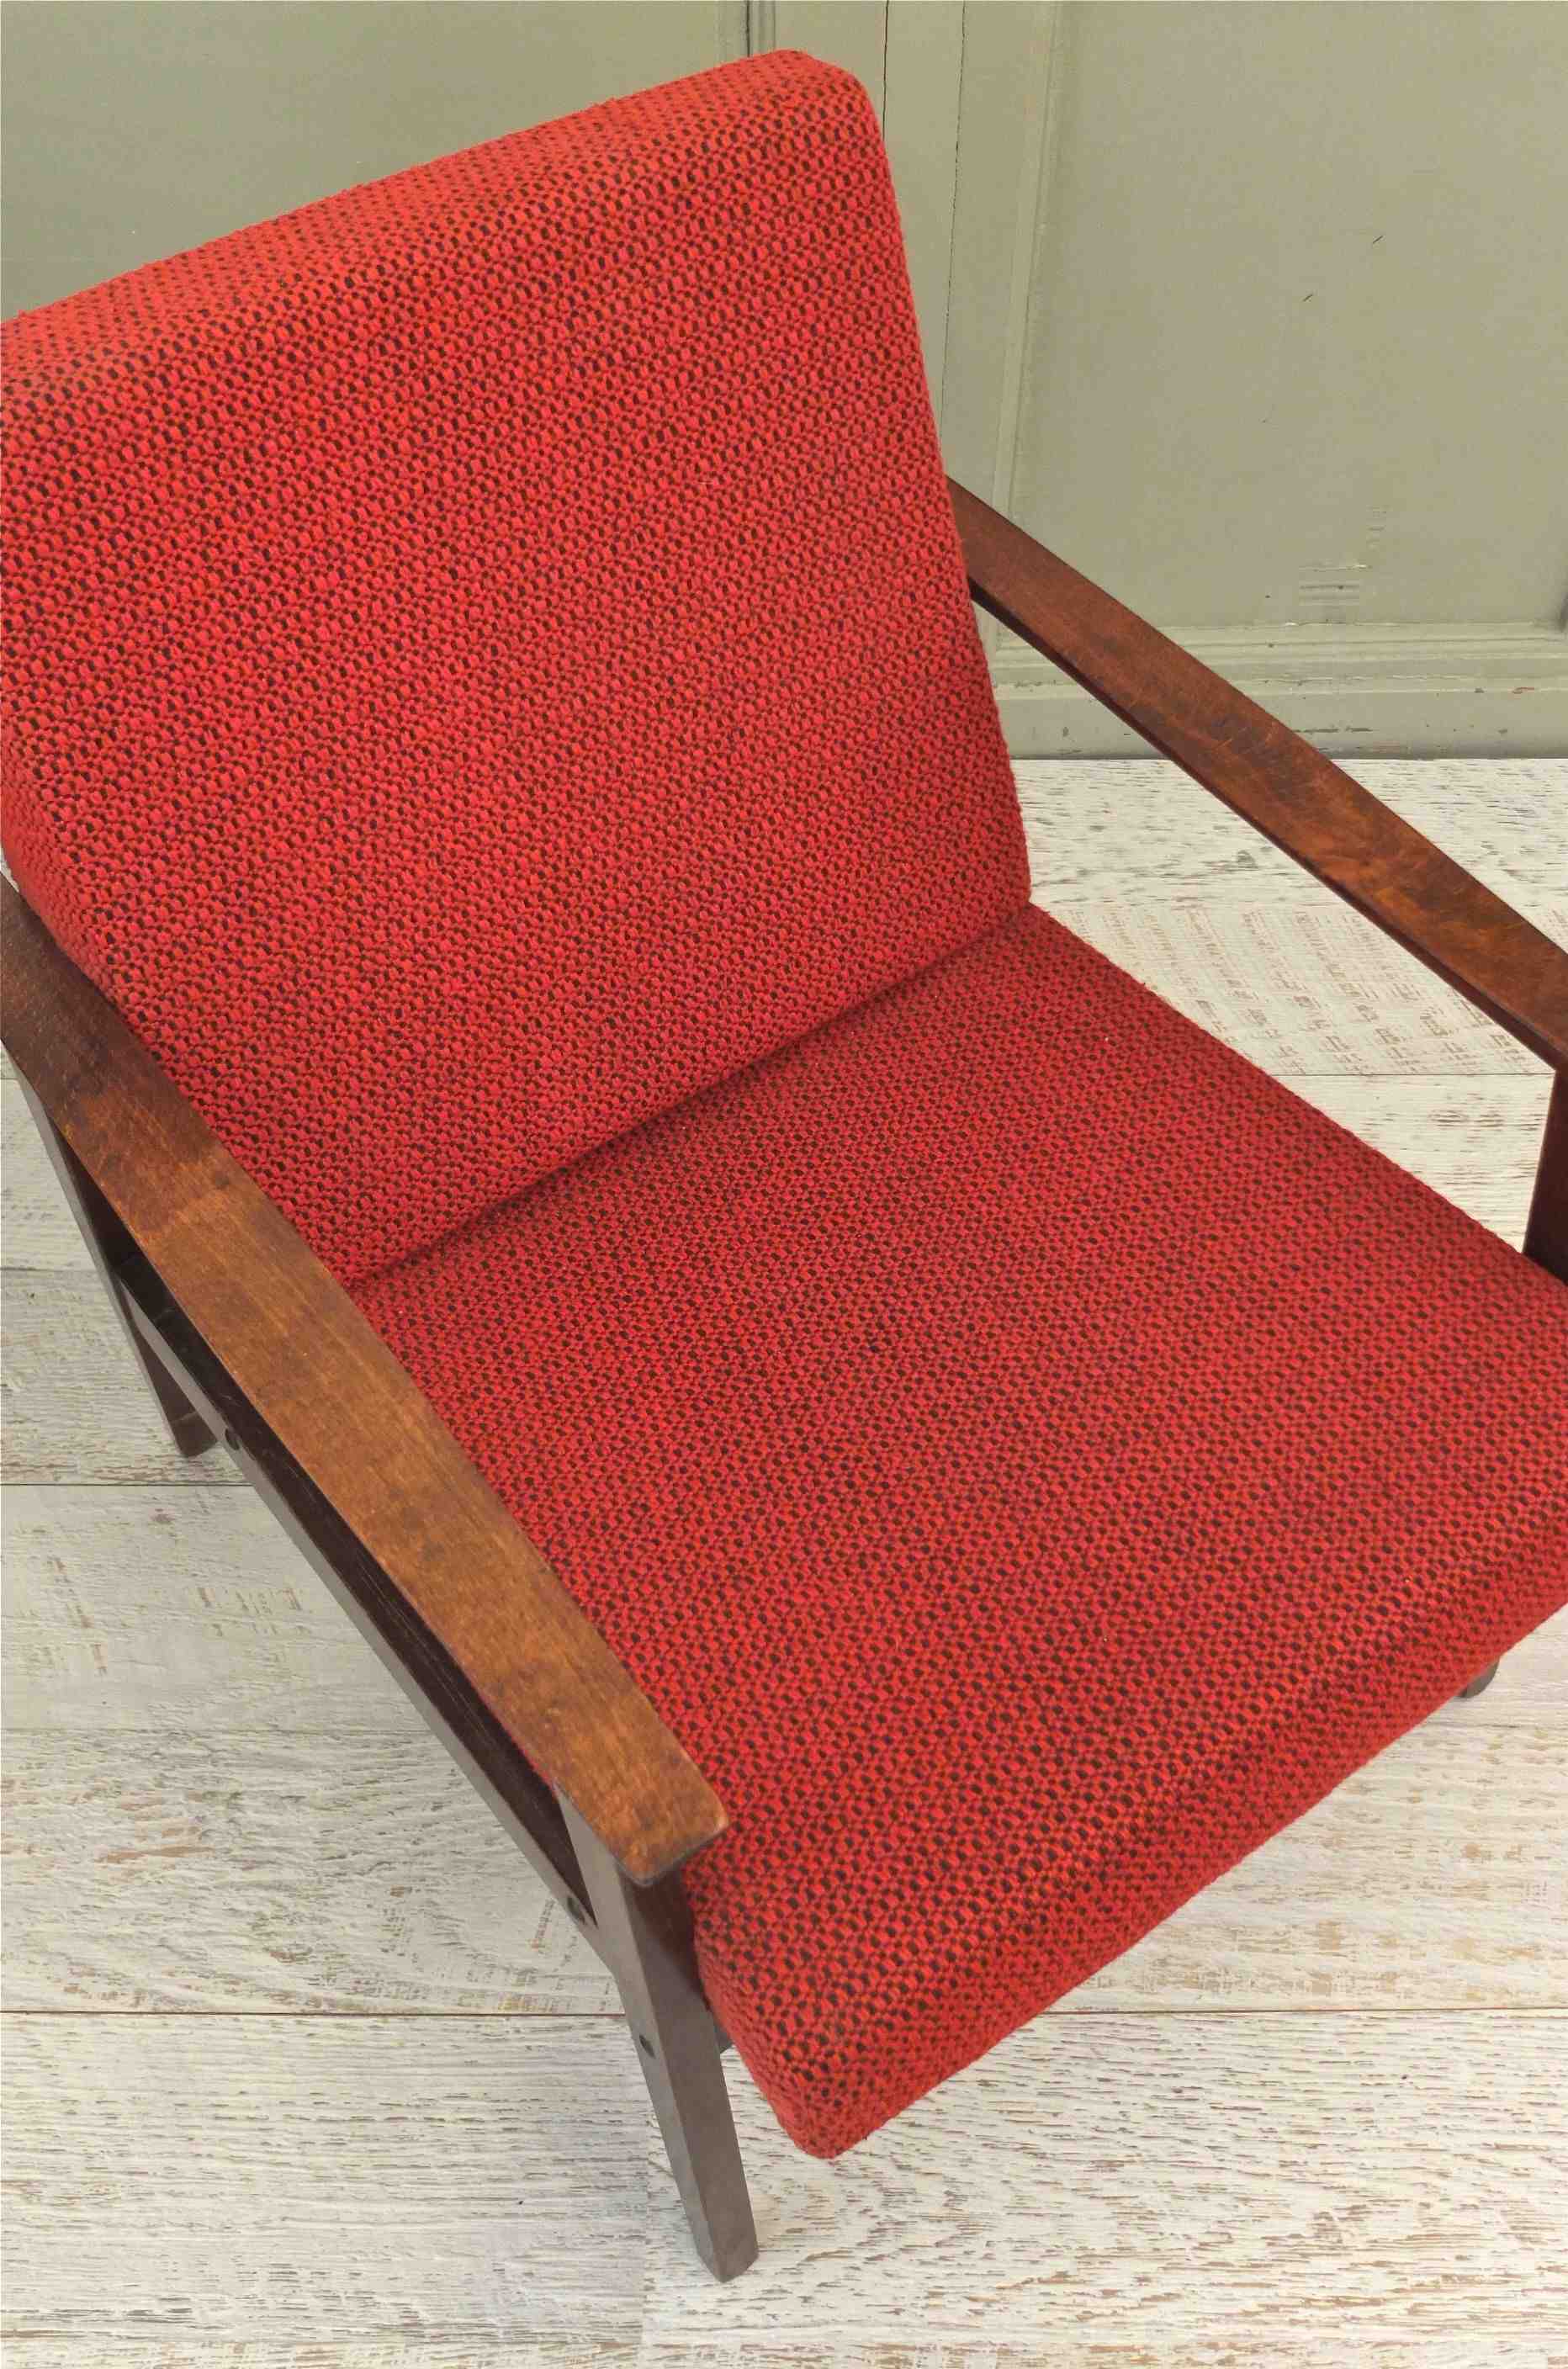 fauteuil midcentury aux lignes modernistes Slavia Vintage "Madison Avenue" 6